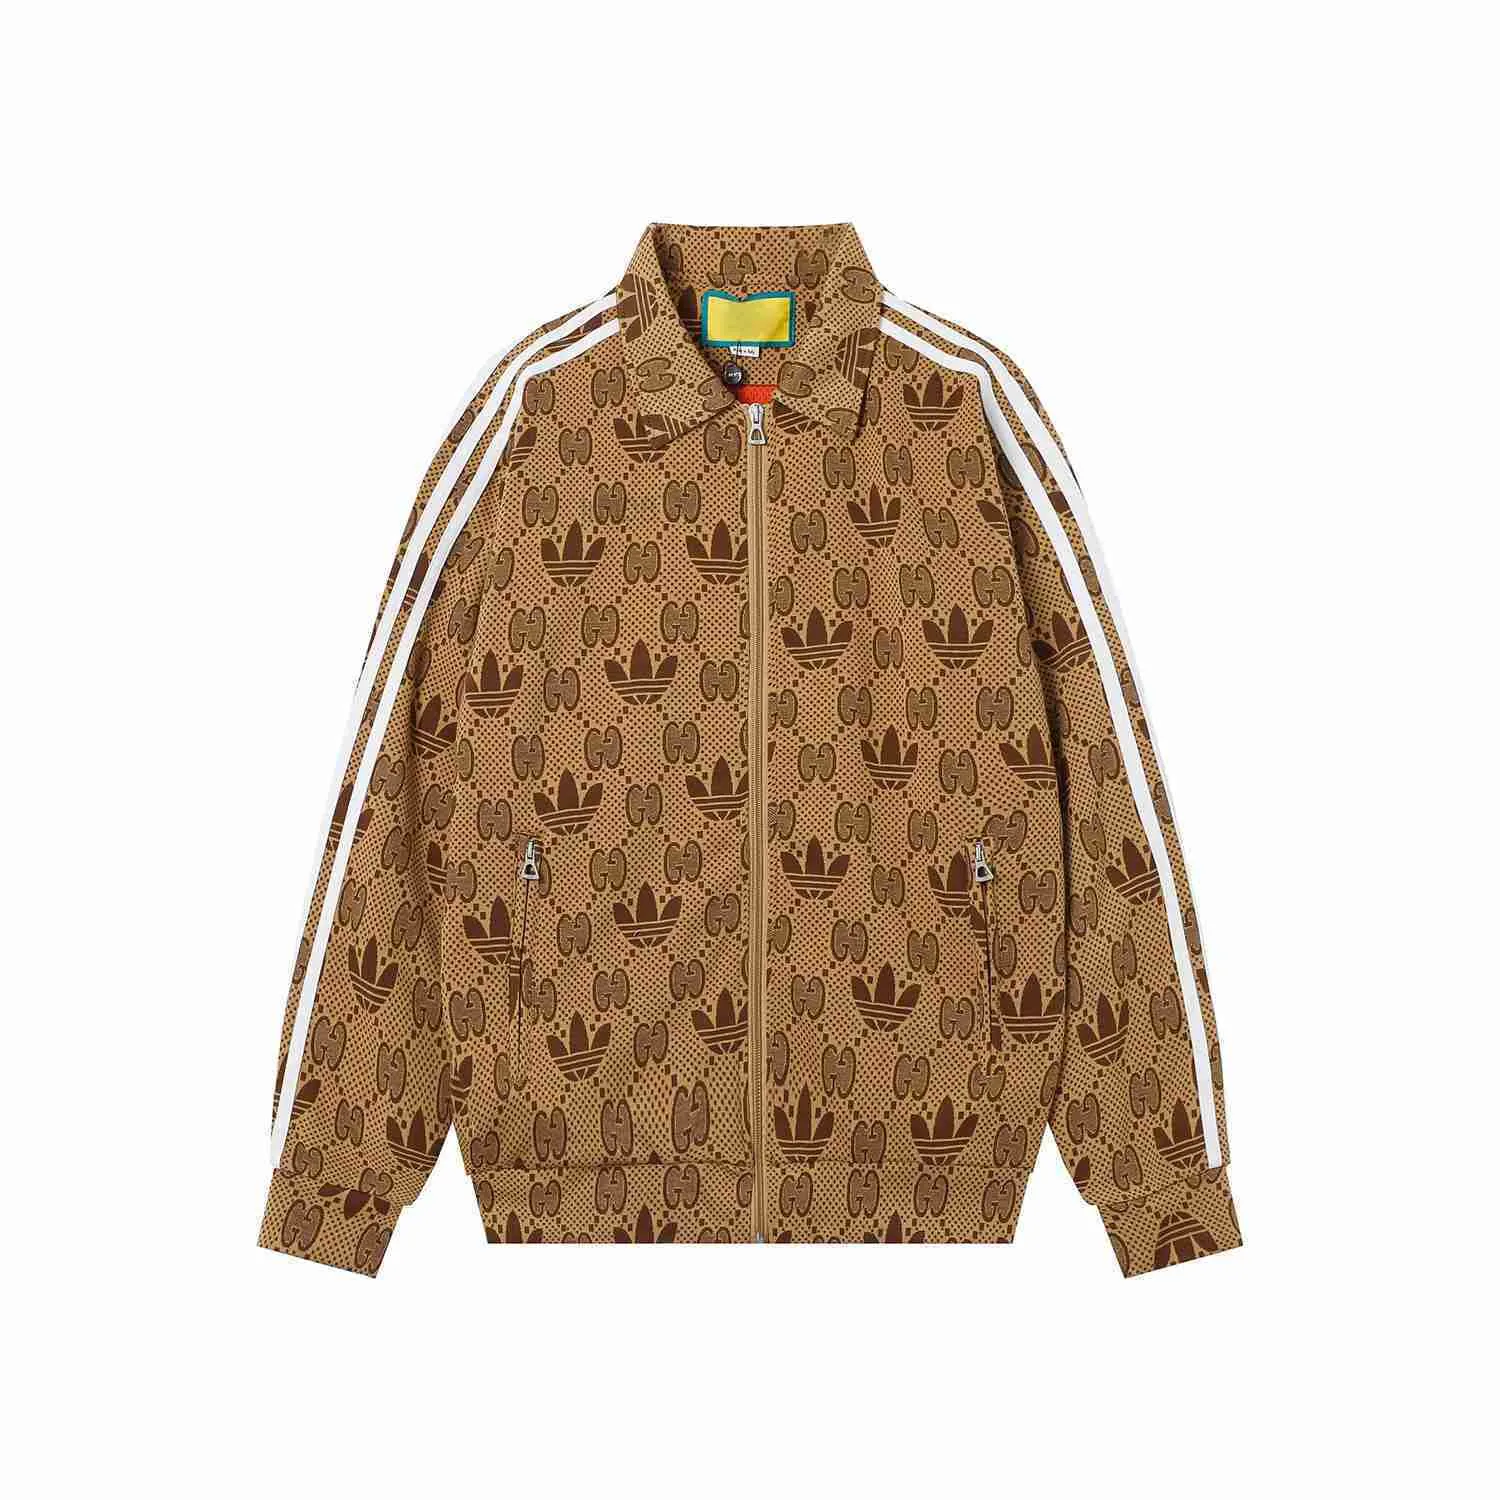 Erkek Ceketler Lüks Marka Yakışıklı Erkek Ceket Yüksek Kişilik Zarif Baskılı Baskılı Tasarım Sonbahar ve Kış Yeni Top Tasarım Kot Ceket-3xlq54ytt9